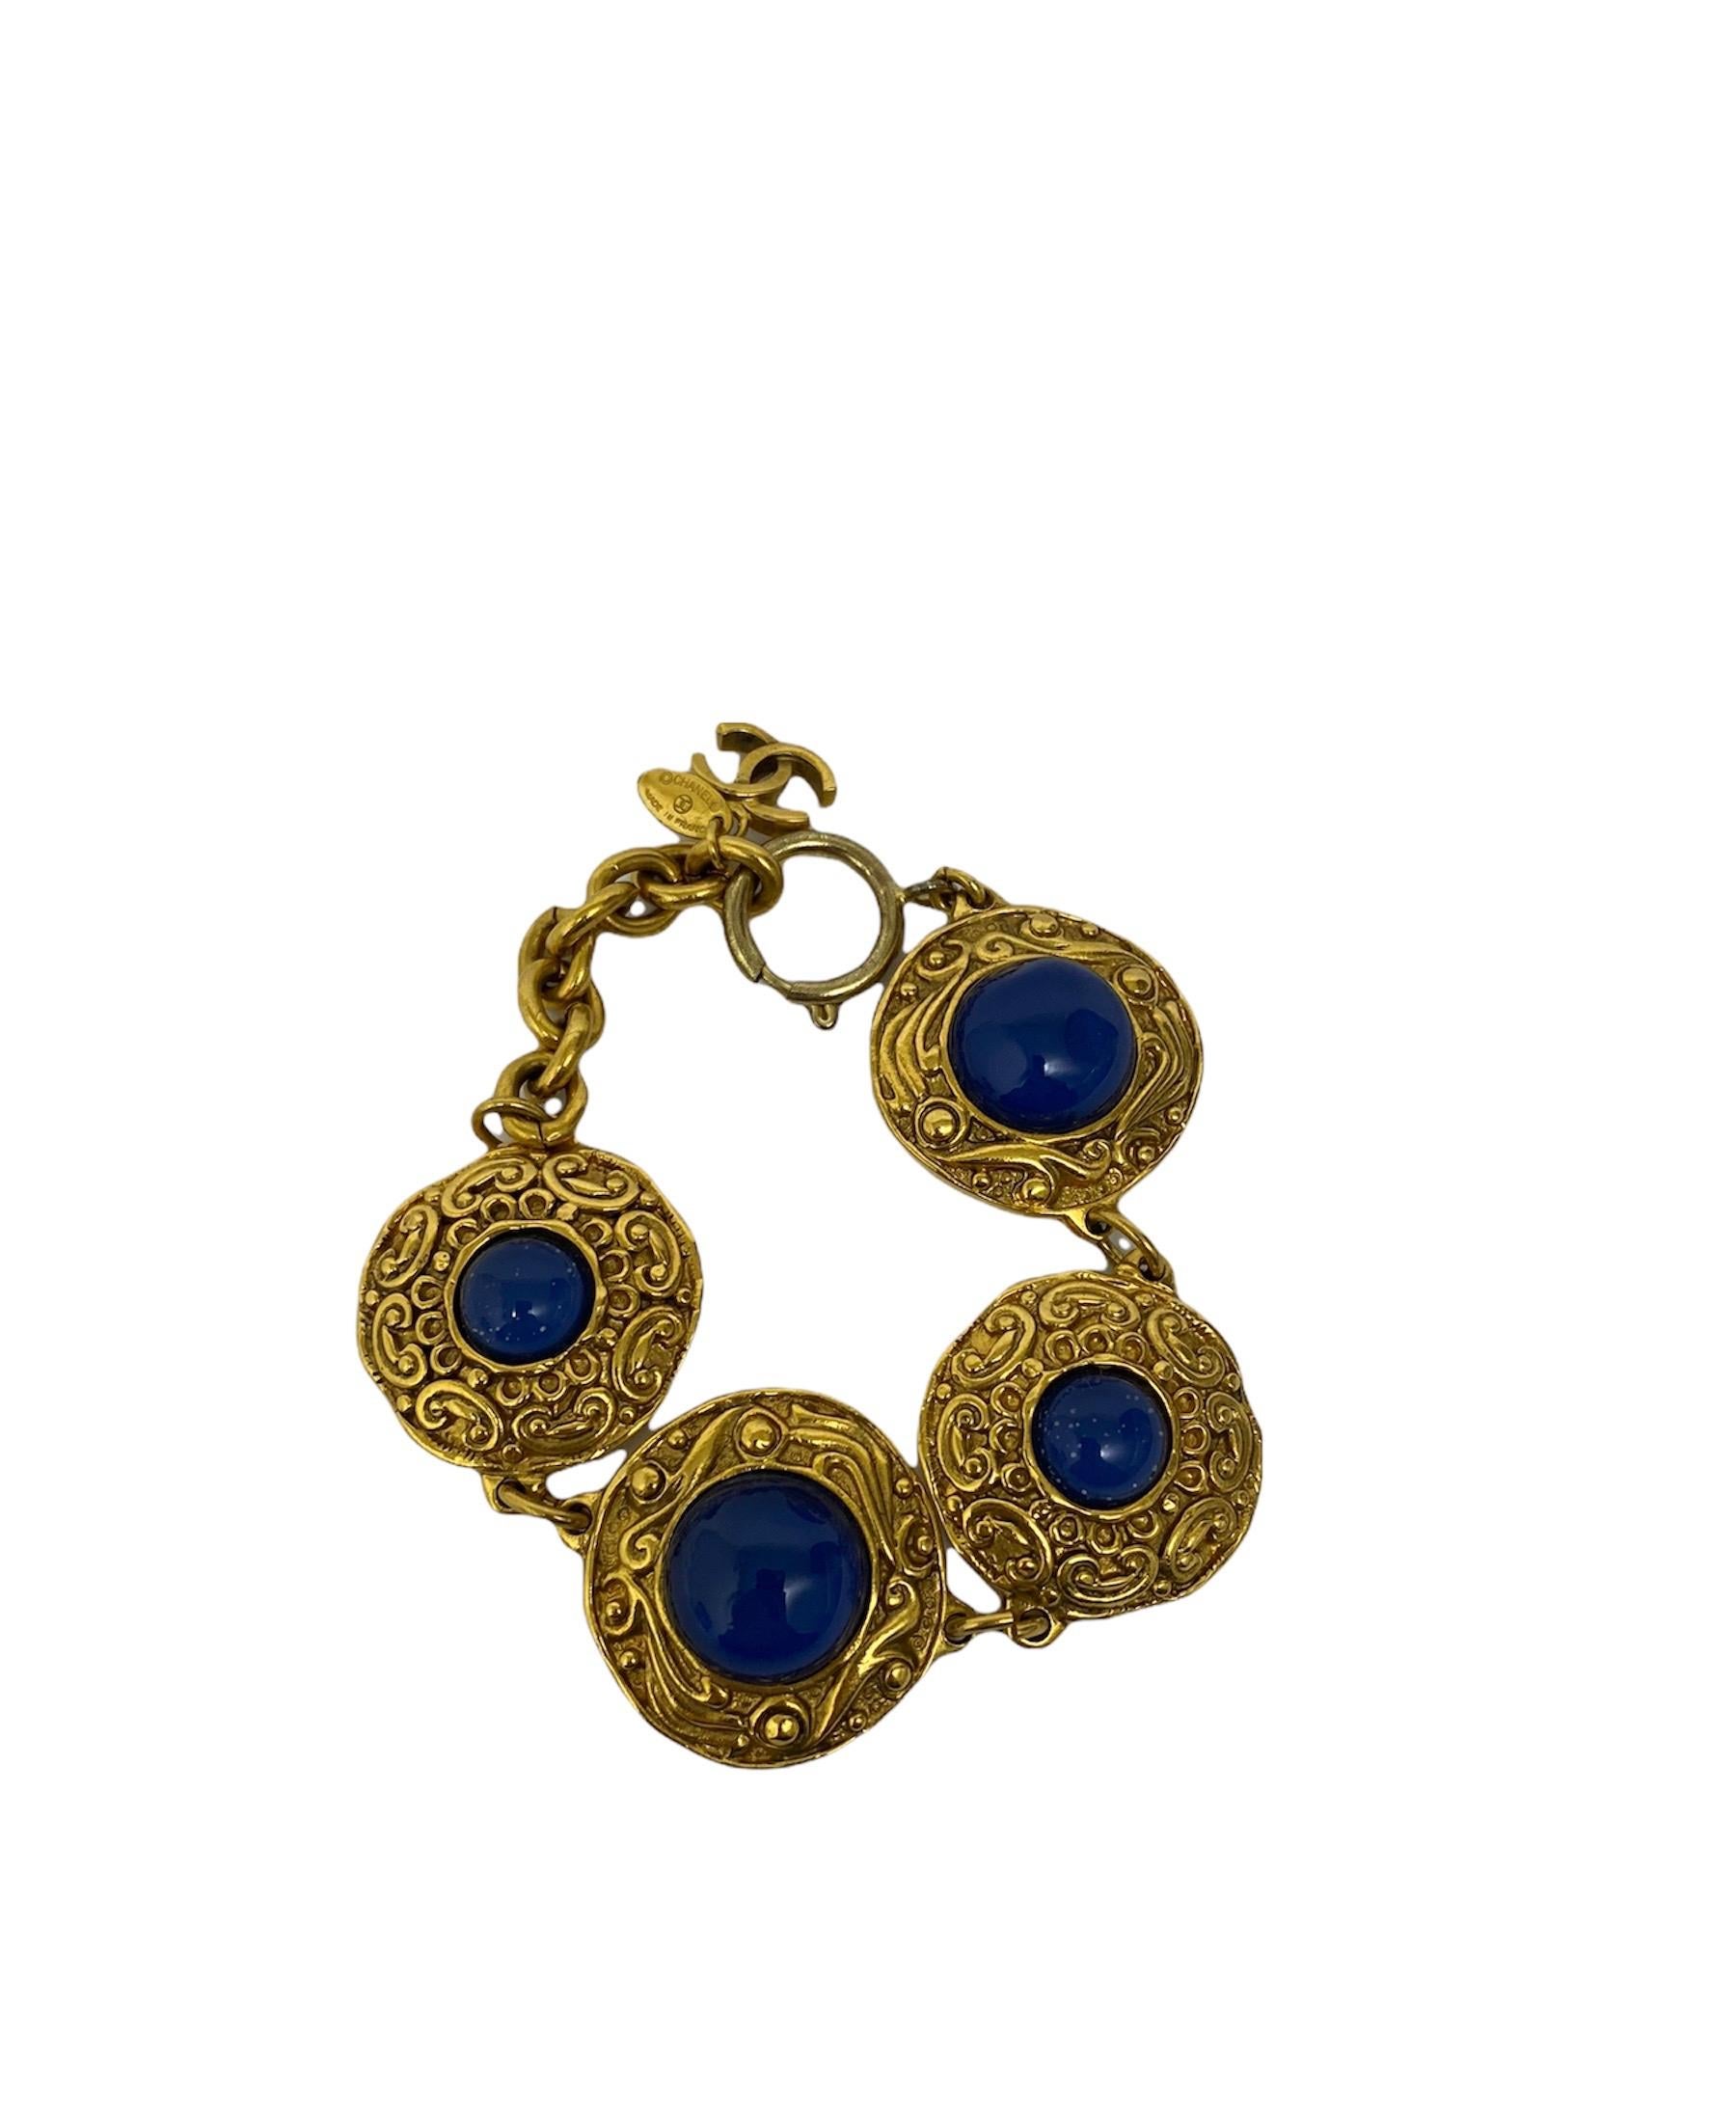 Bracelet Chanel en métal doré avec des cristaux bleus. 23,5 cm de long. Les conditions du bracelet sont excellentes avec de légers signes d'usure.